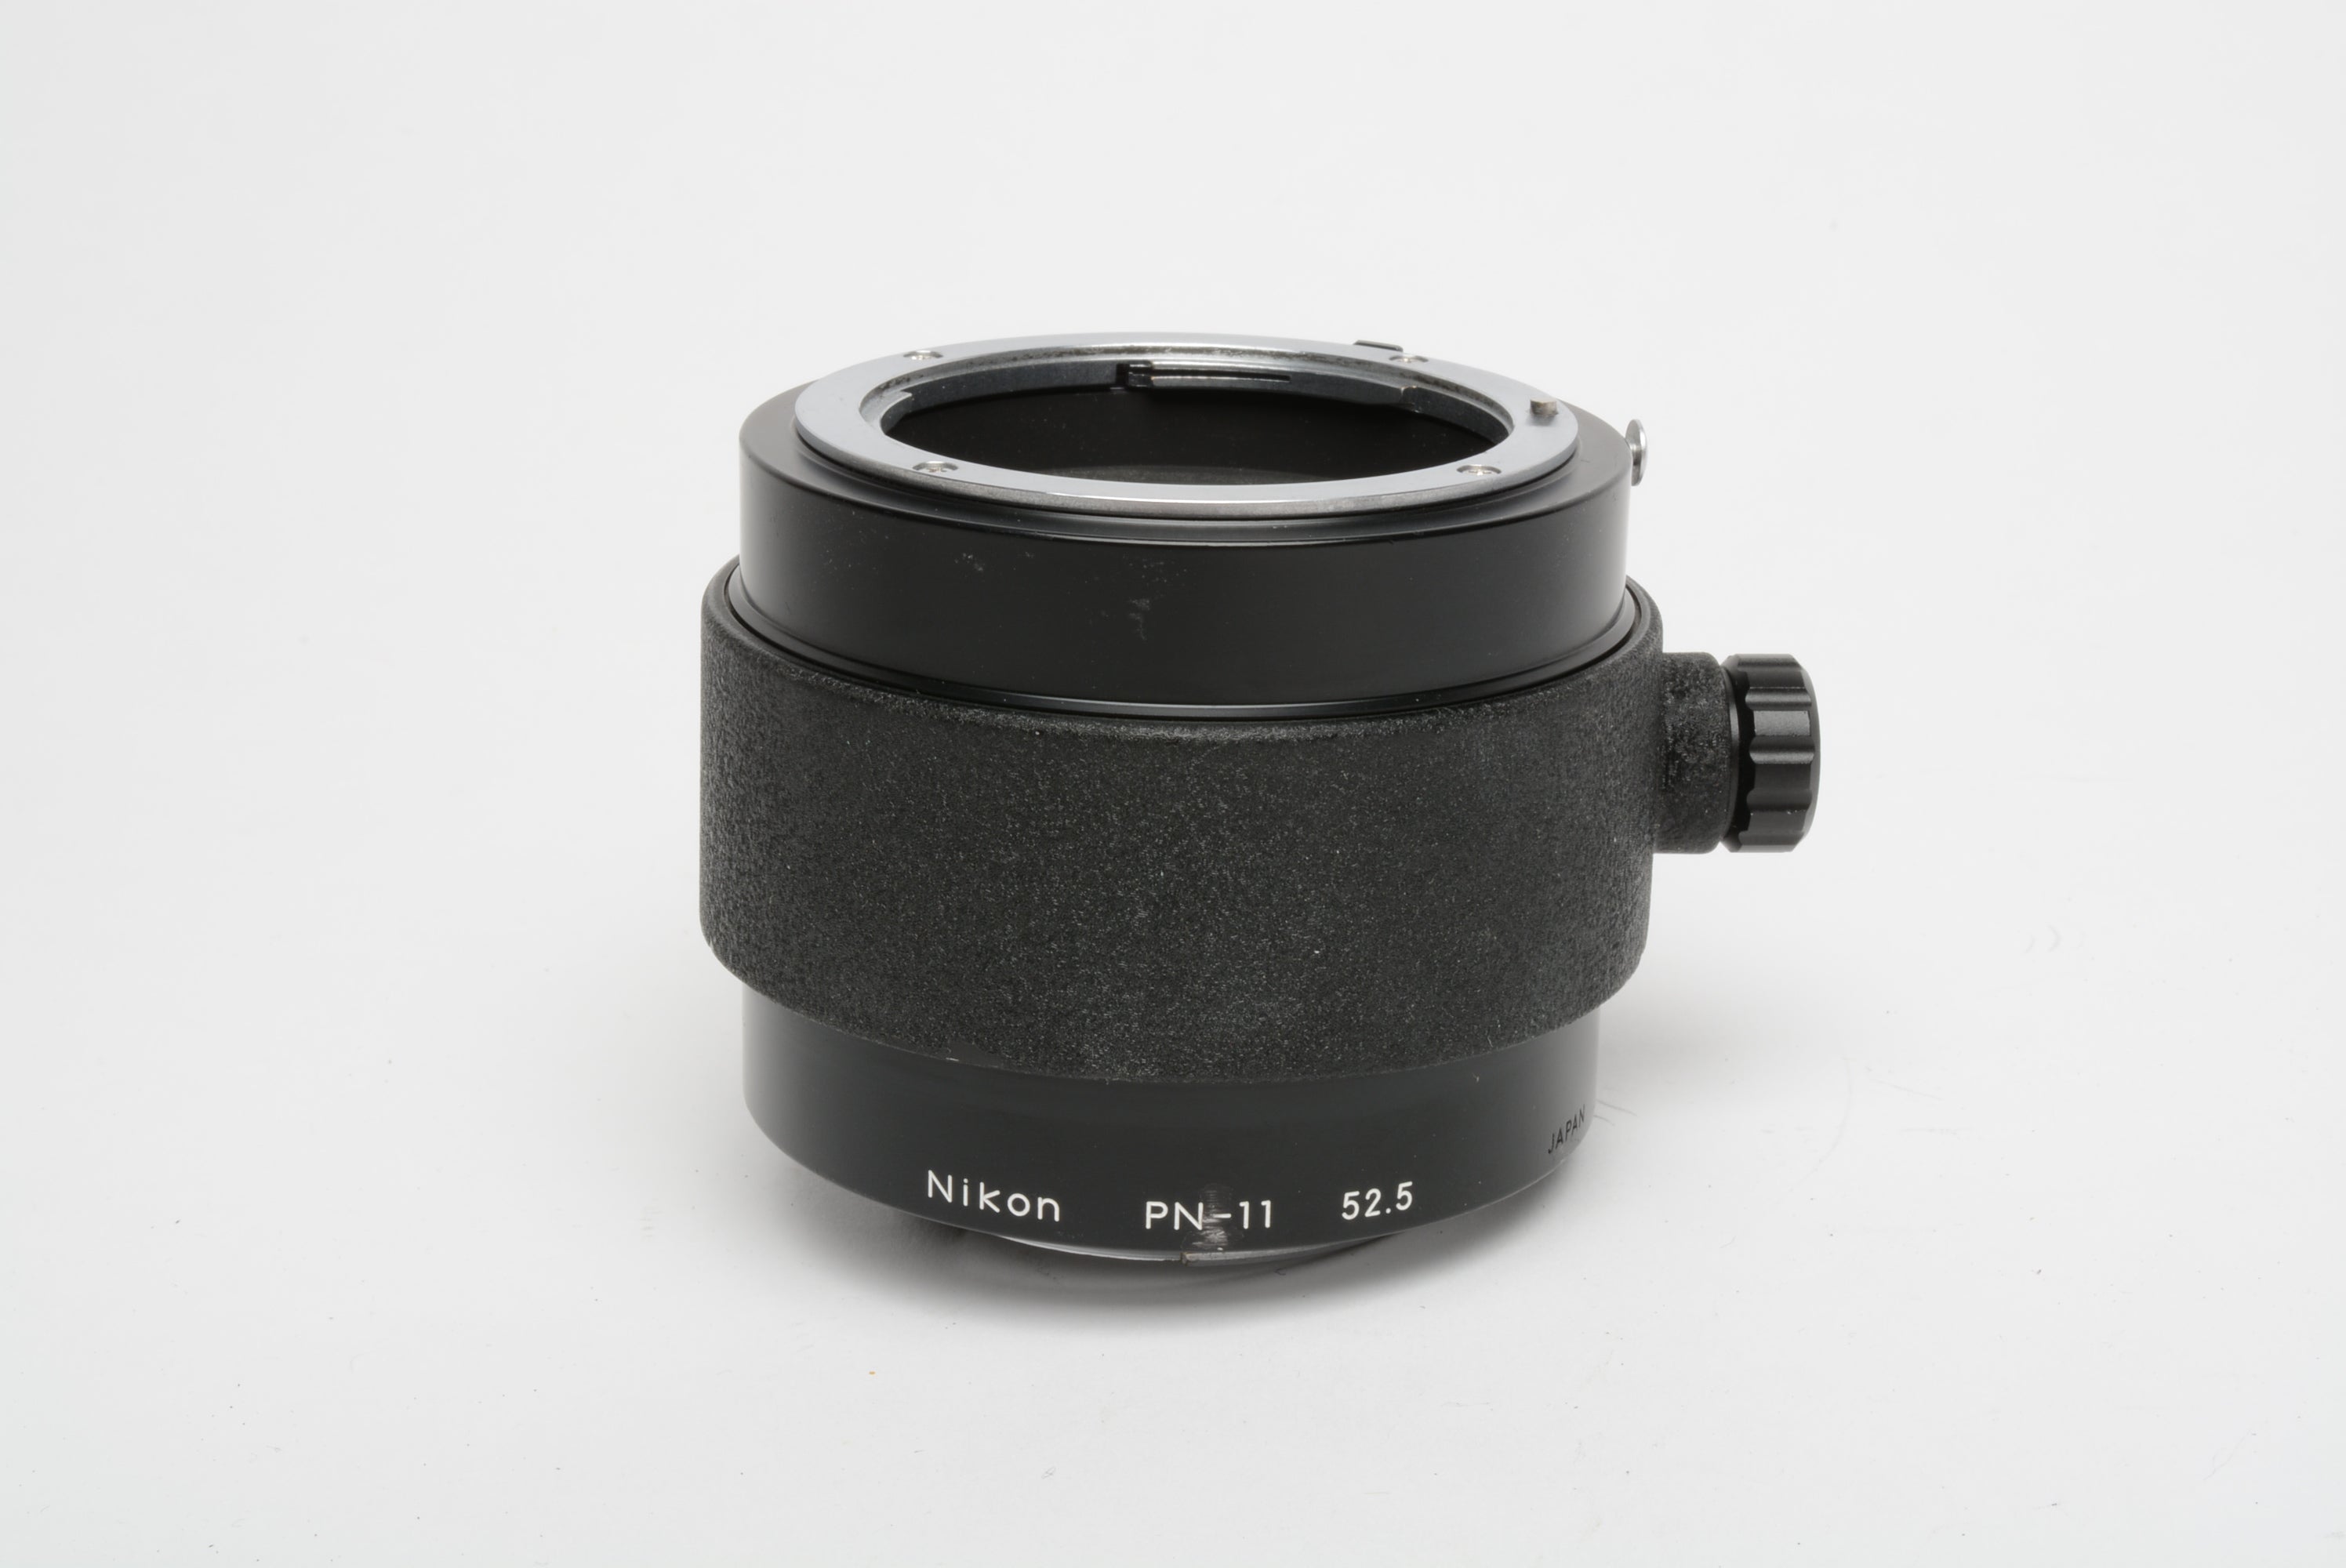 Nikon PN-11 52.5 Auto Extension Tube 52.5mm